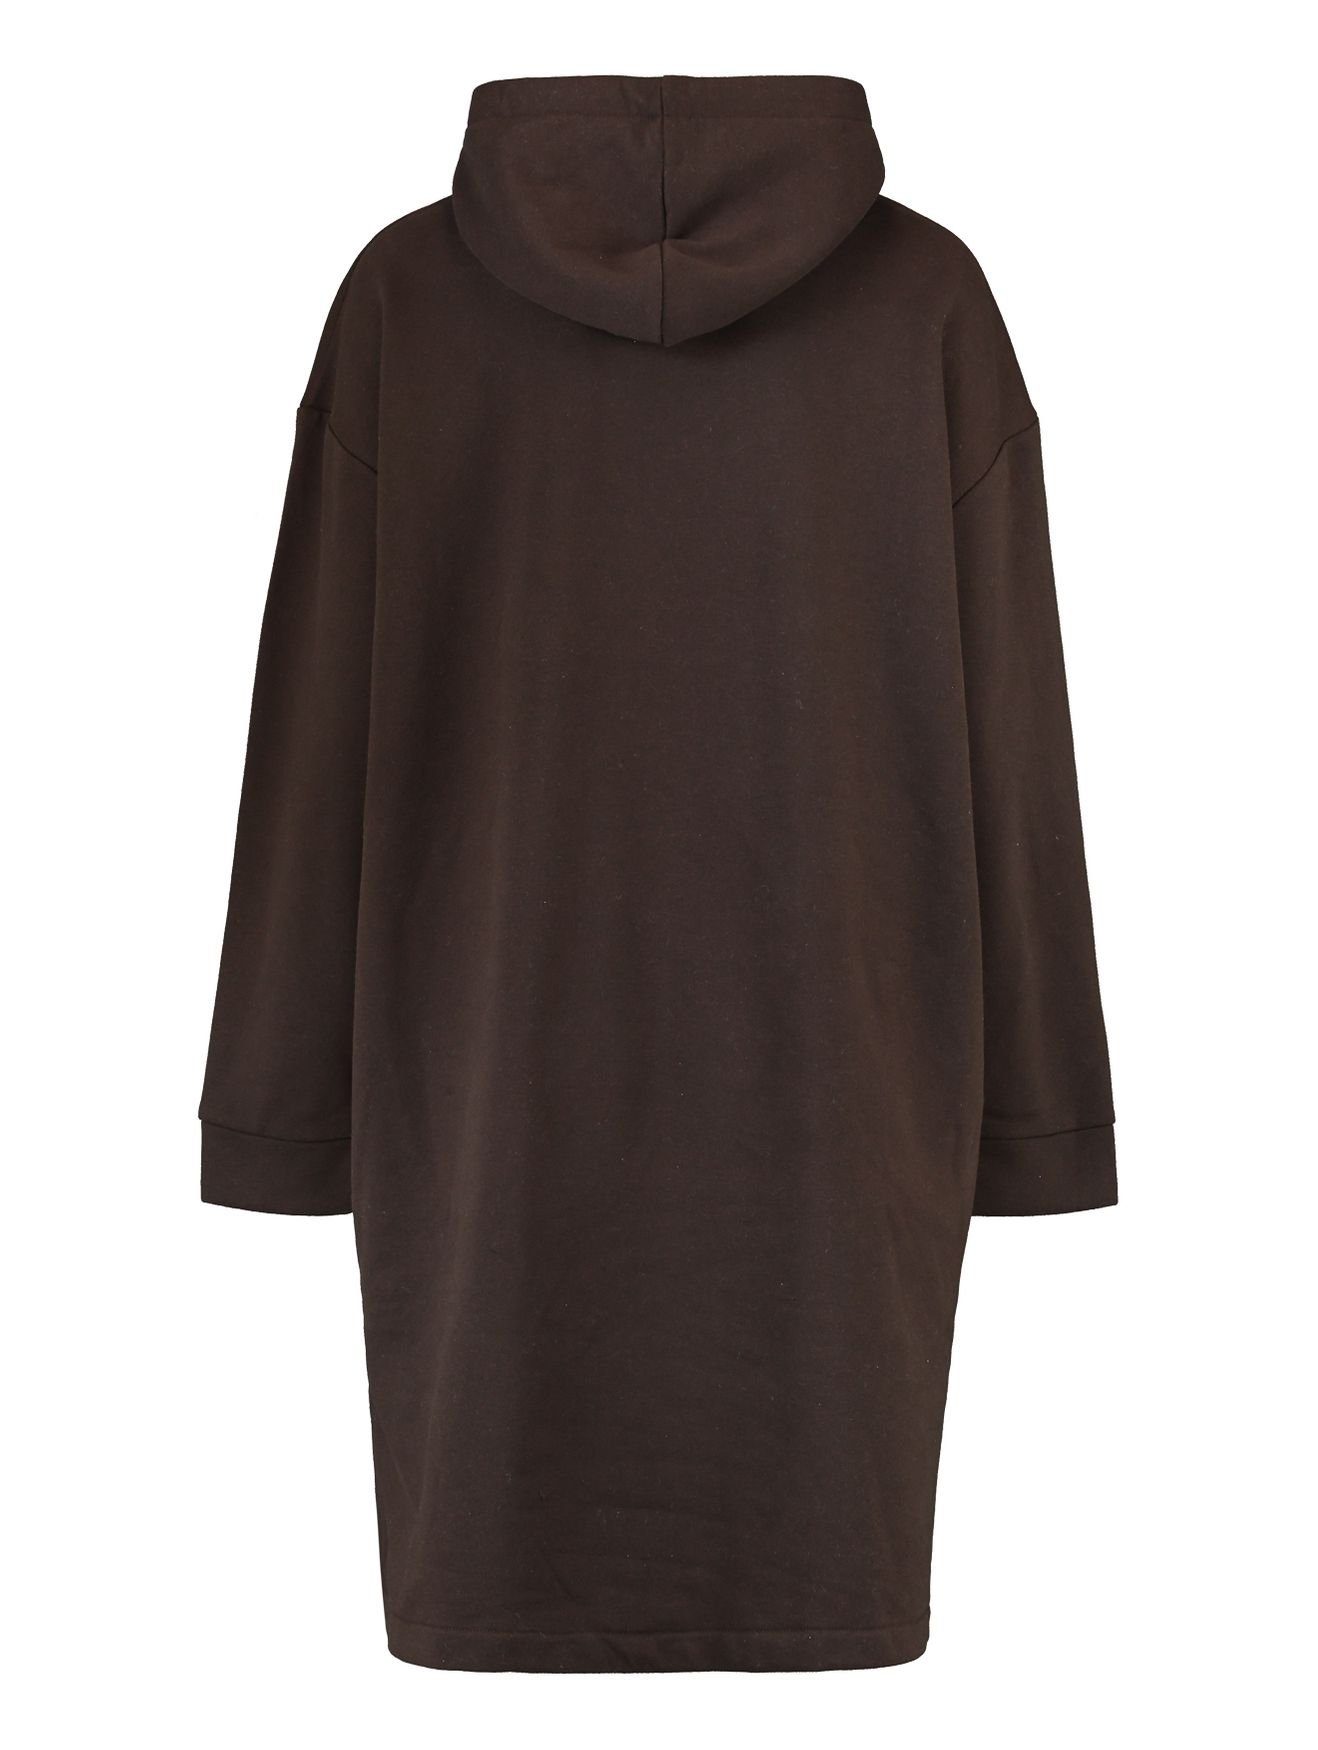 HaILY’S Shirtkleid Kleid Kapuzen SWERA Dress Hoodie (lang) Sweat in 4705 Knielang Pullover Mini Braun-2